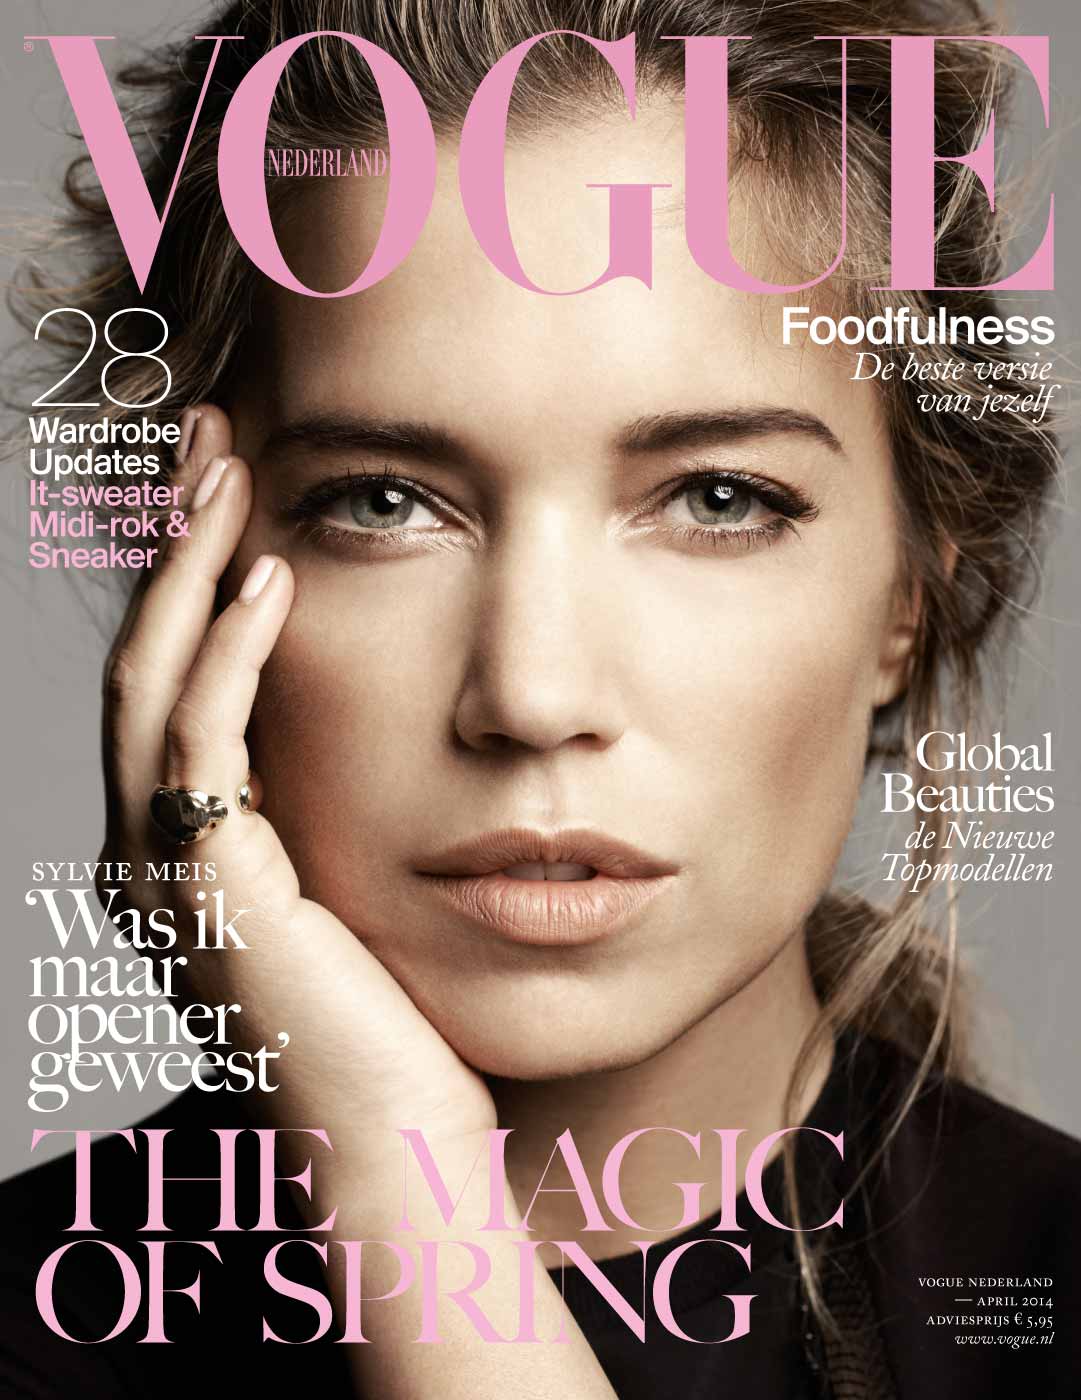 Журнал вог сайт. Обложка для журнала. Журнал Vogue. Красивые обложки журналов. Обложка Vogue.